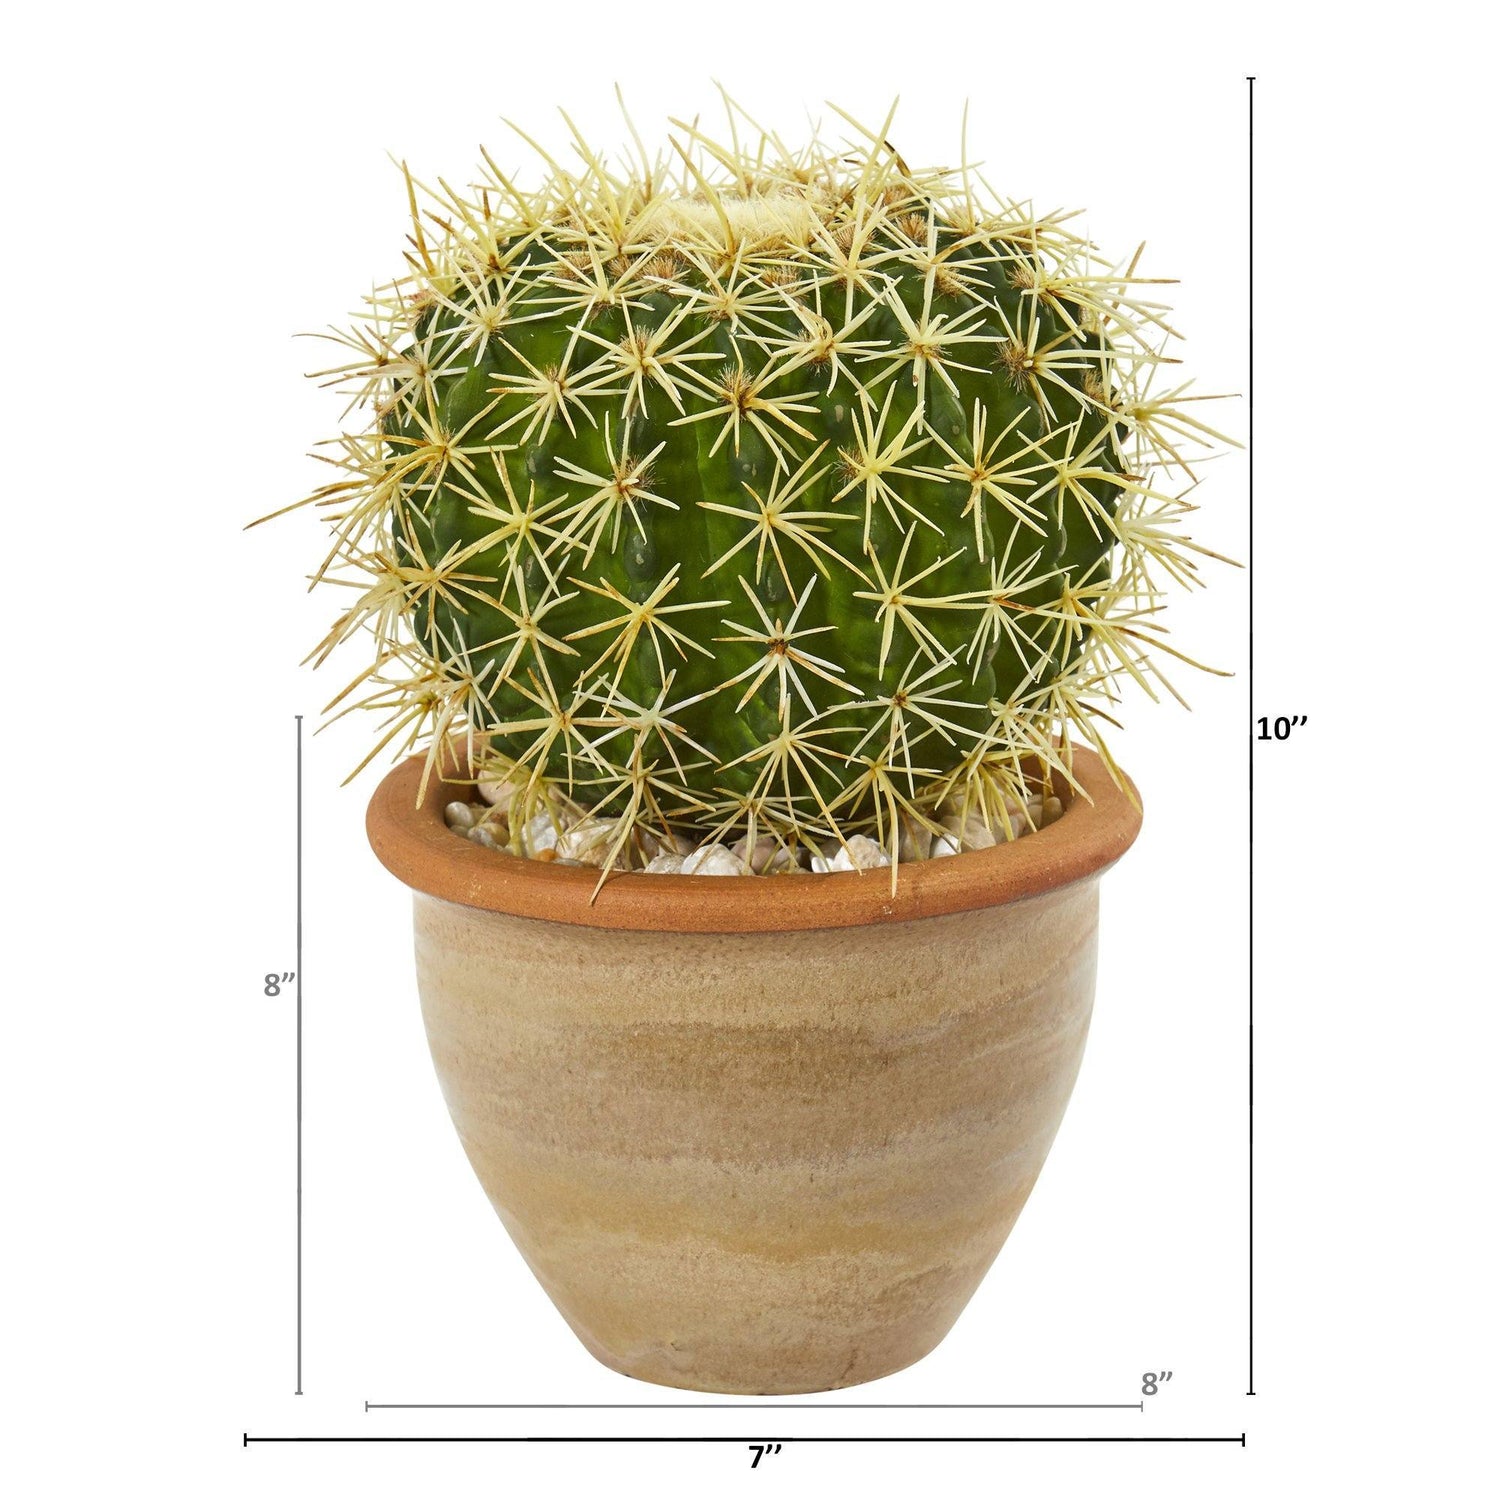 10” Cactus Artificial Plant in Decorative Ceramic Planter